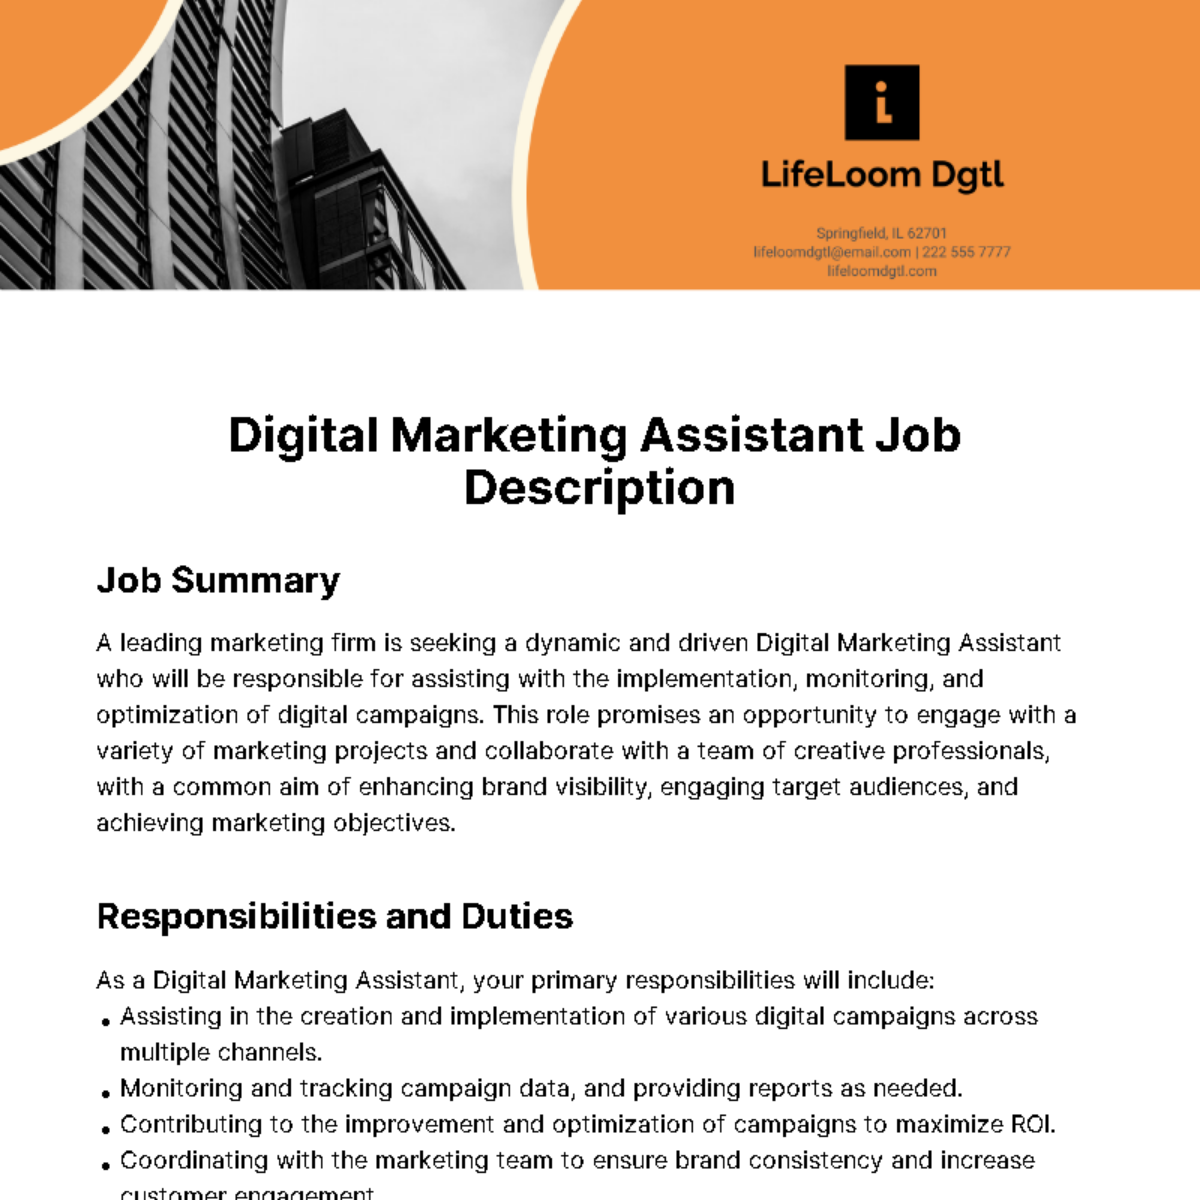 Digital Marketing Assistant Job Description Template